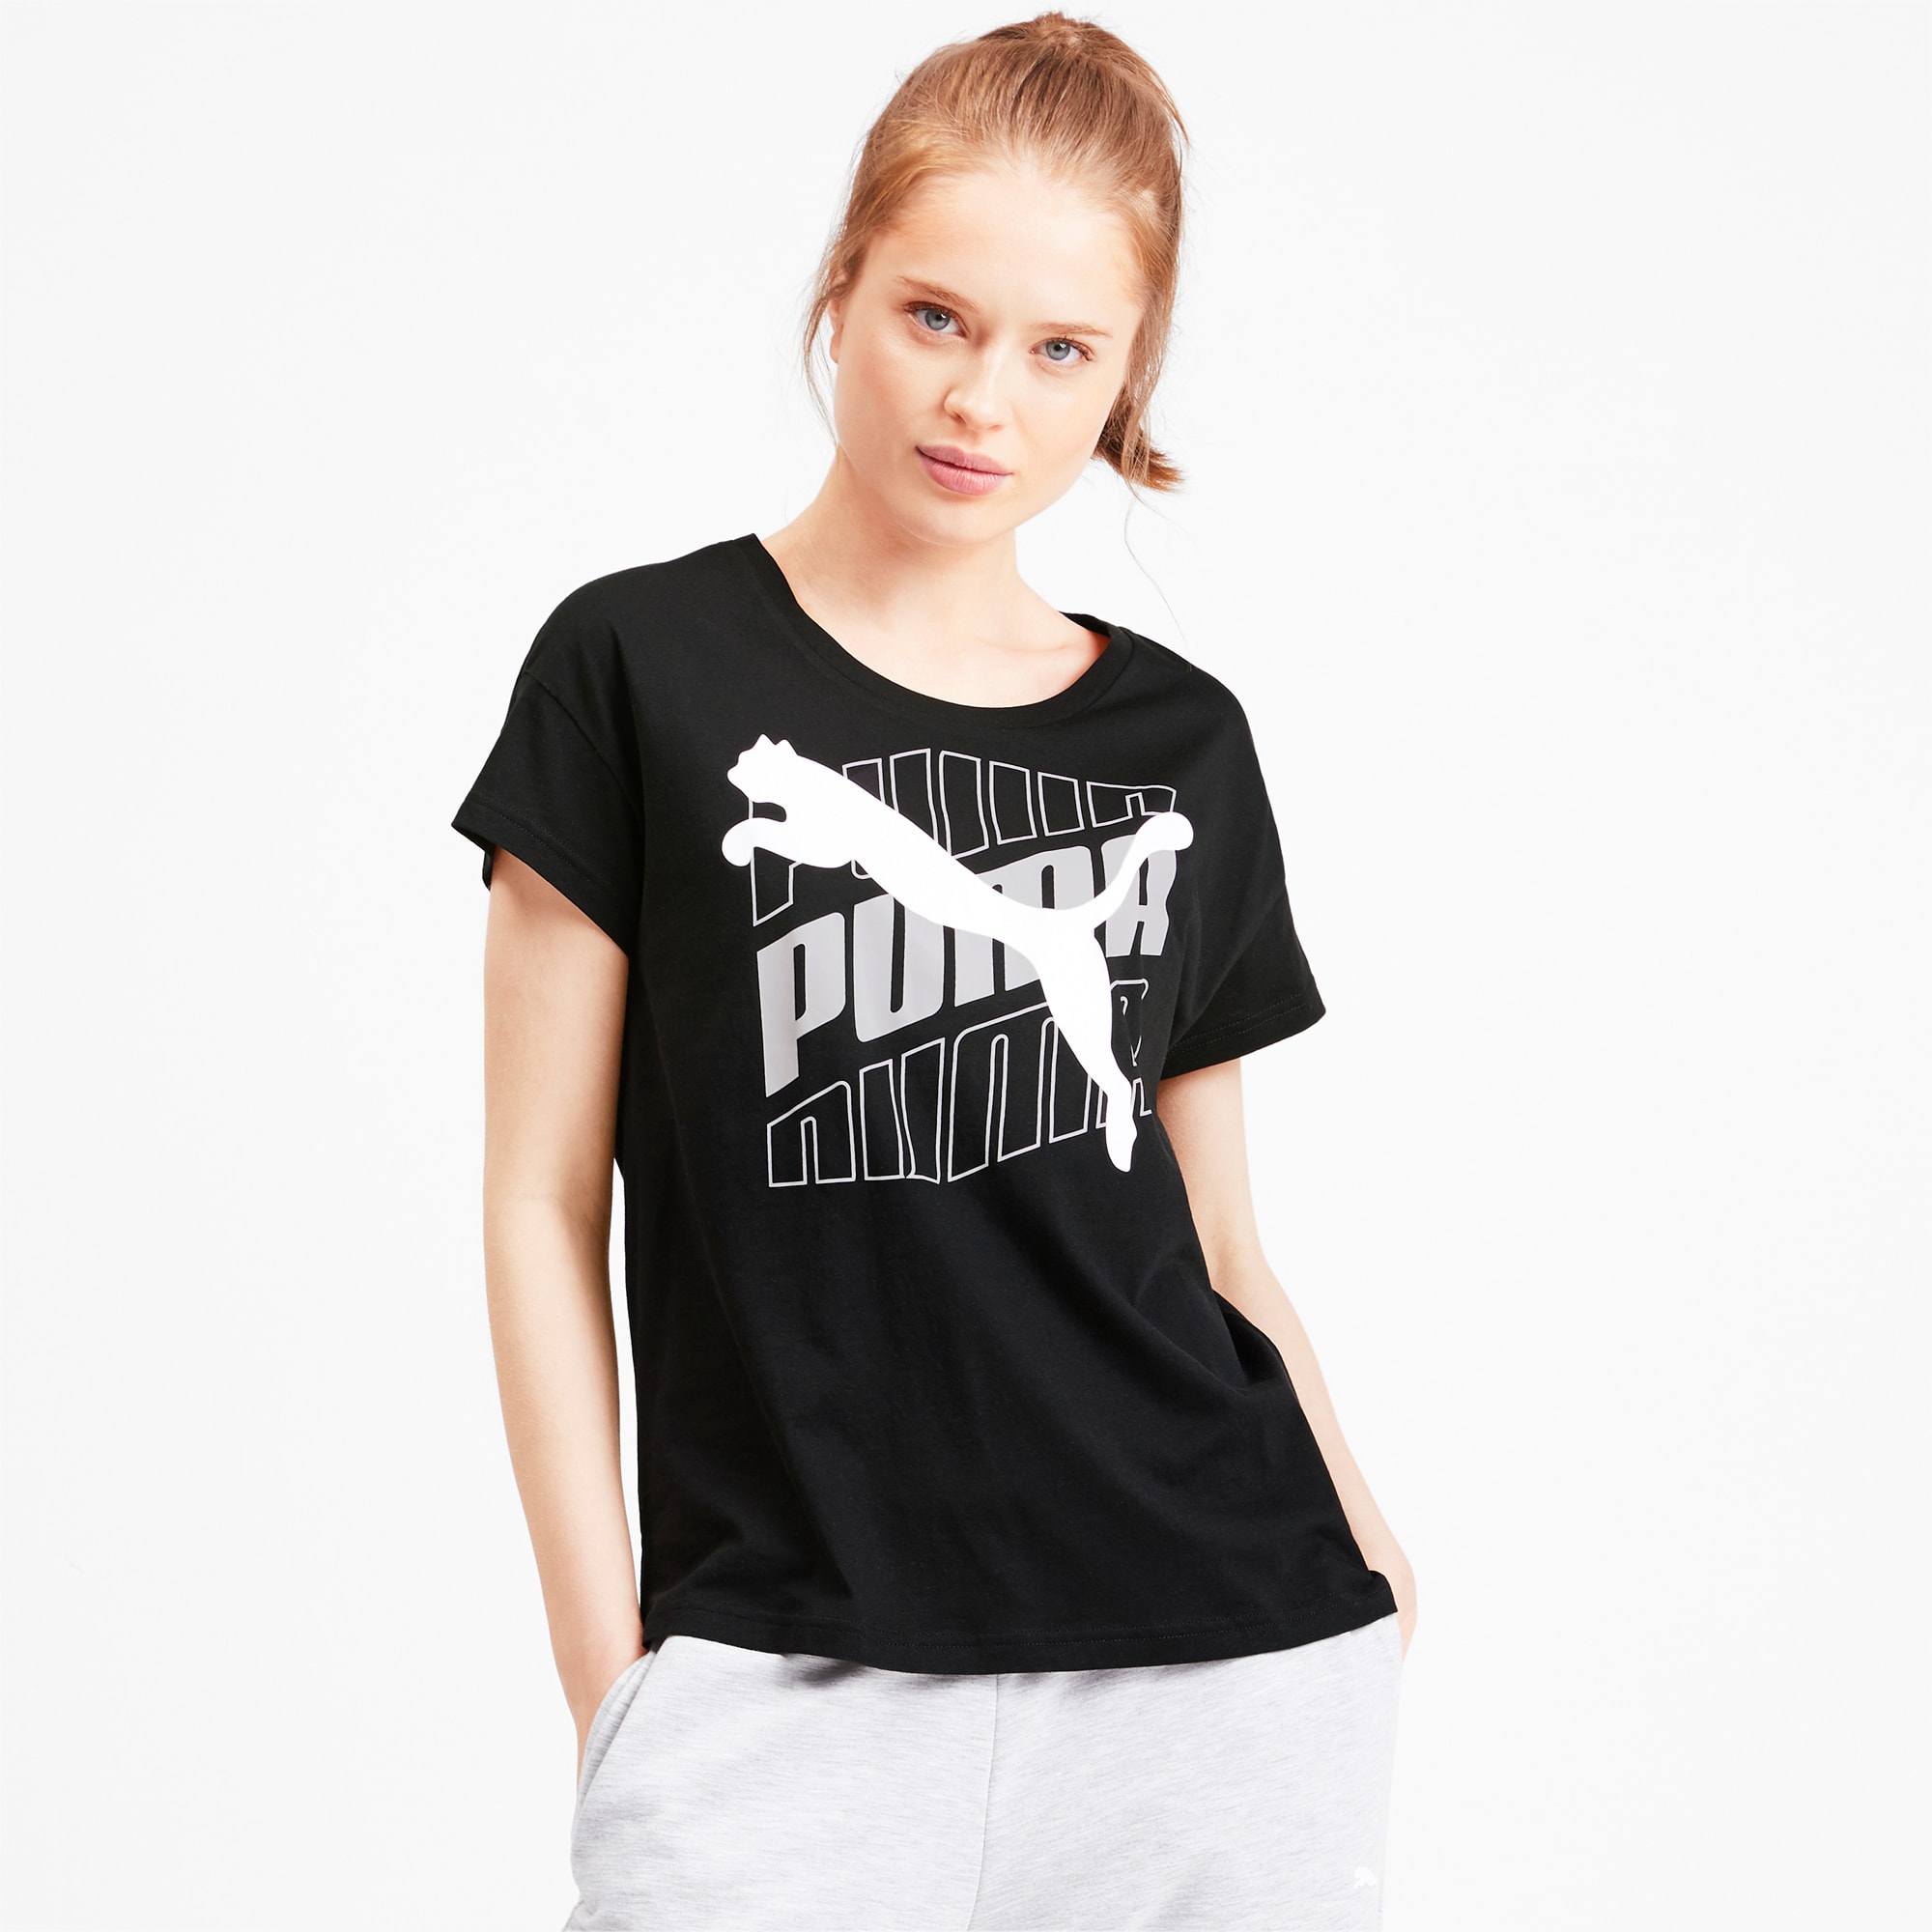 puma black t shirts for womens